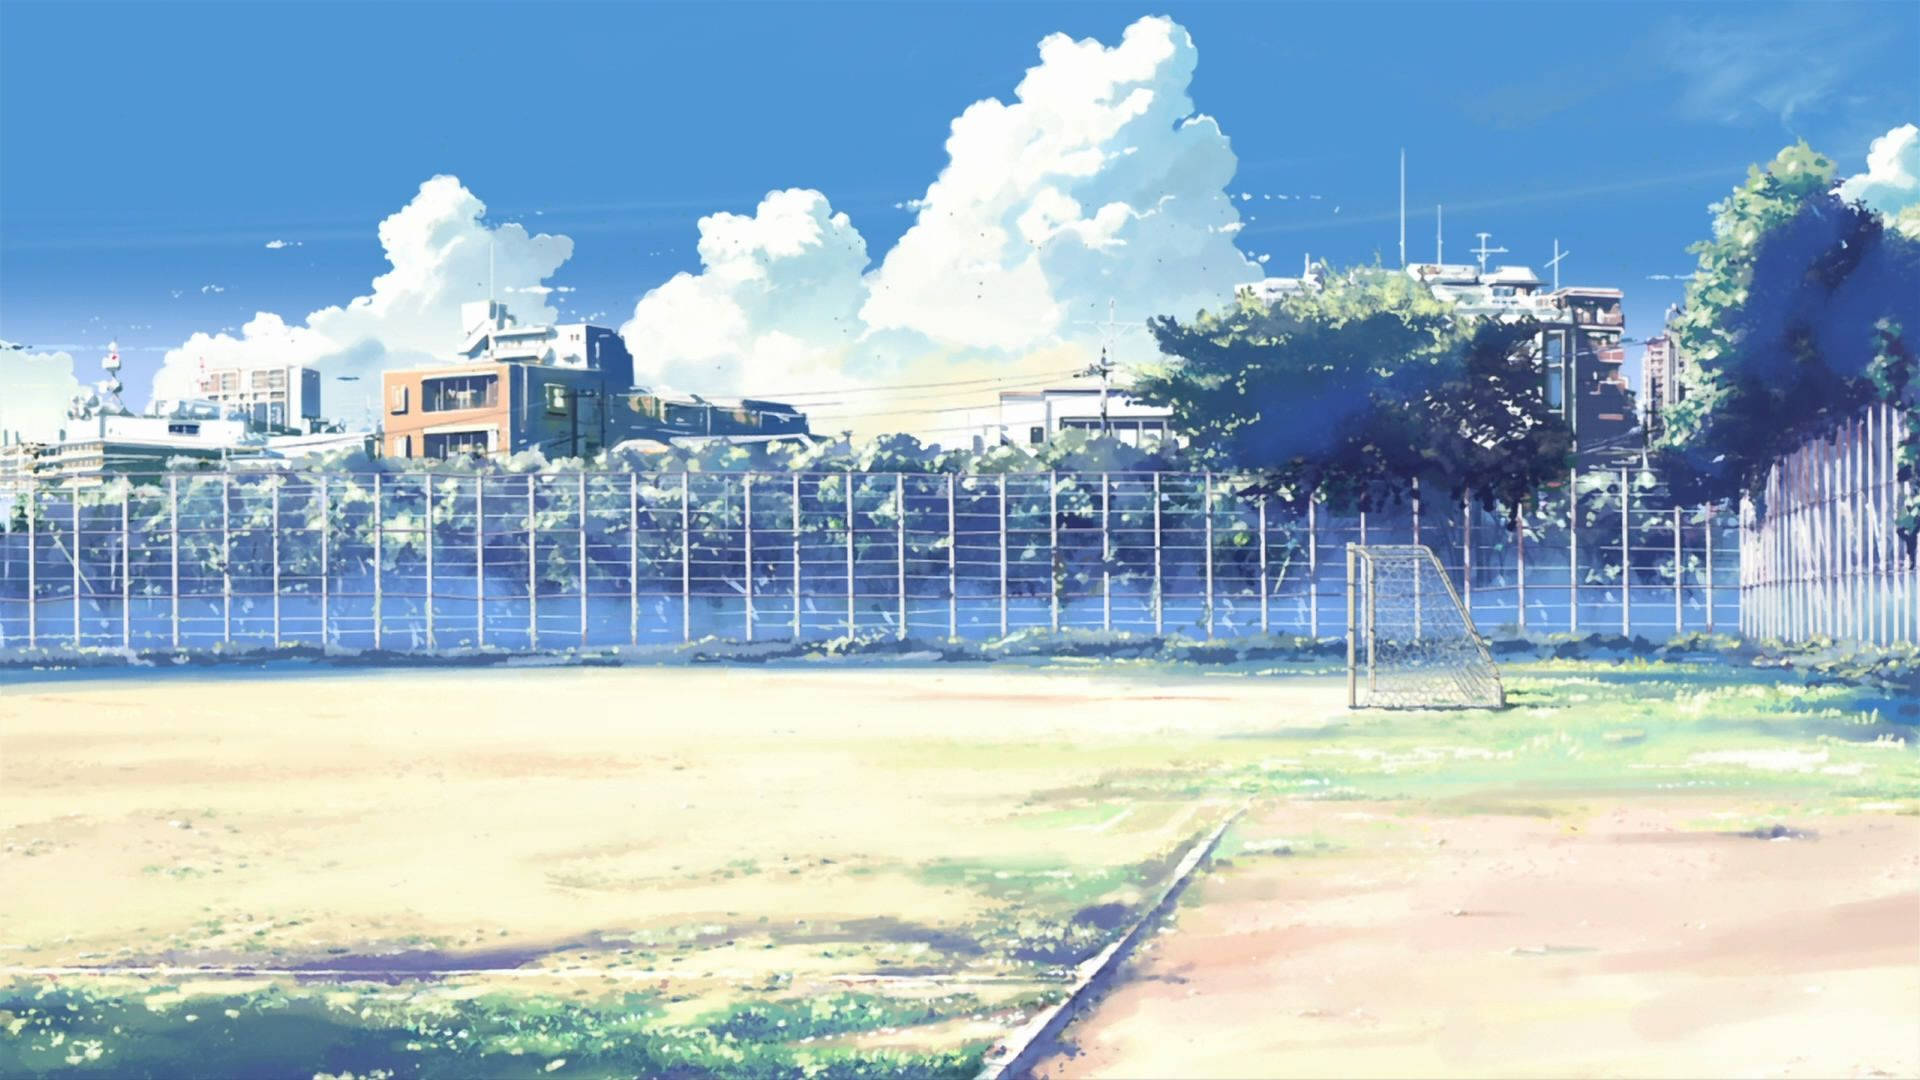 Anime School Scenery Soccer Field Wallpaper